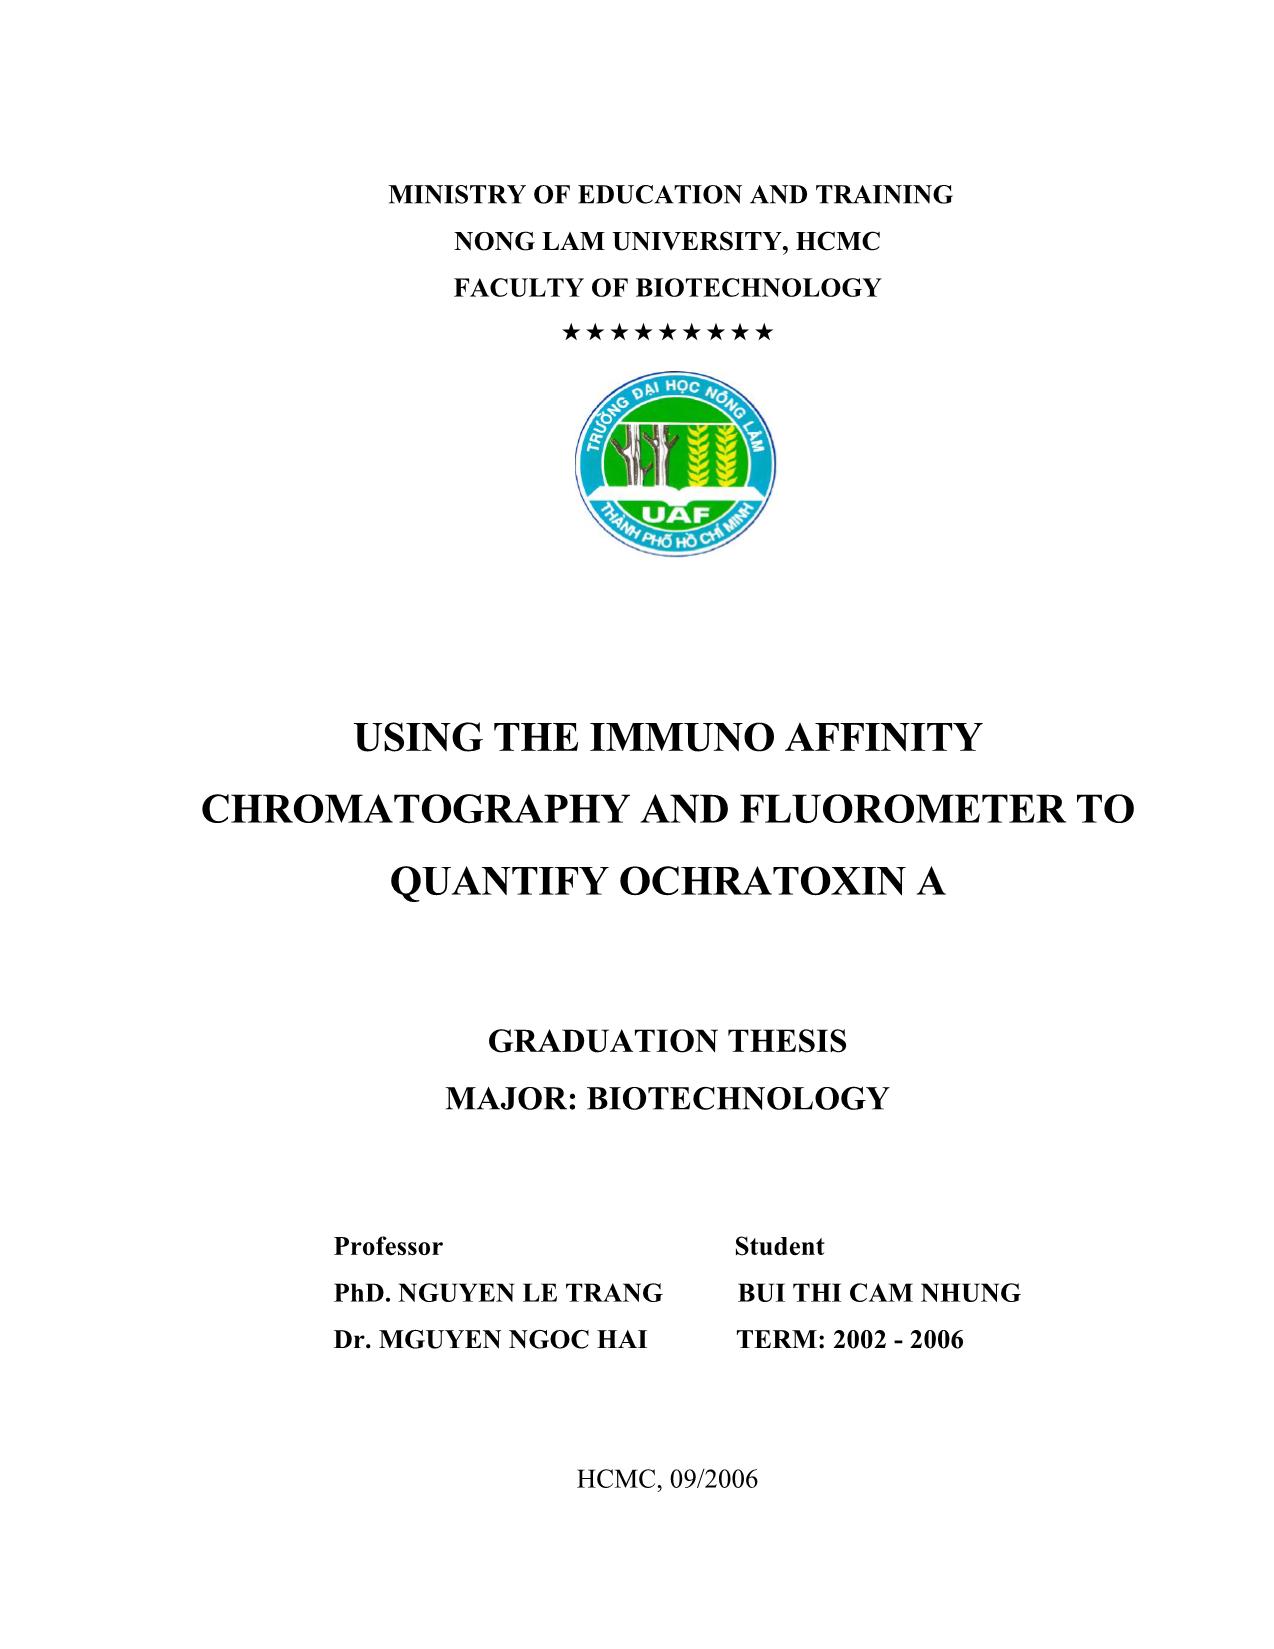 Luận văn Dùng cột sắc ký ái lực miễn dịch và huỳnh quang kế định lượng ochratoxin a trang 3